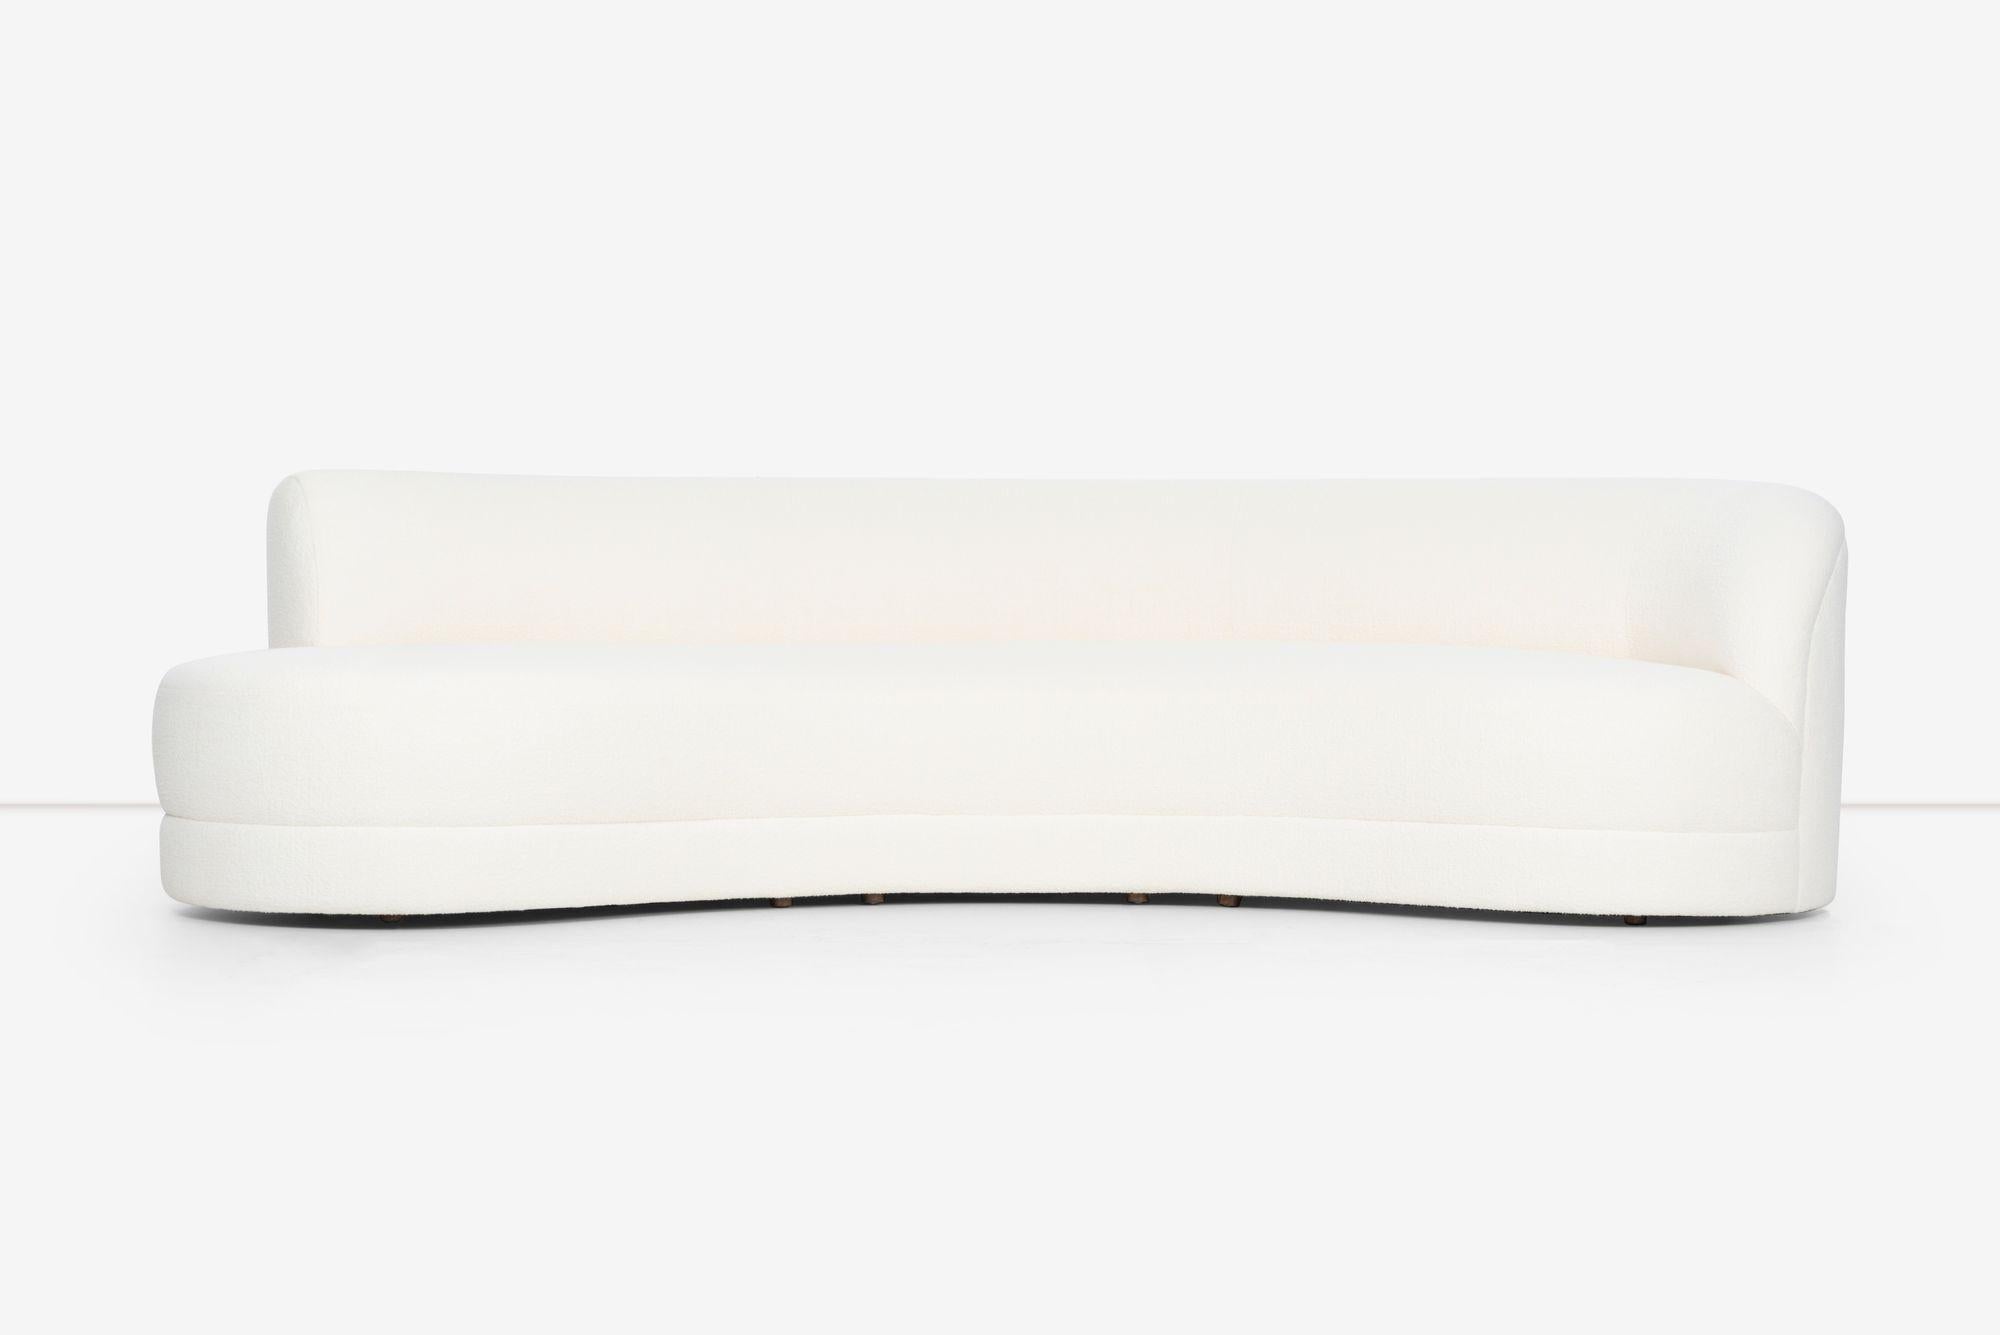 Geschwungenes Sofa für Directional im Stil von Milo Baughman, neu gepolstert mit italienischem Boucle
Maße: 119 in der Länge und 54